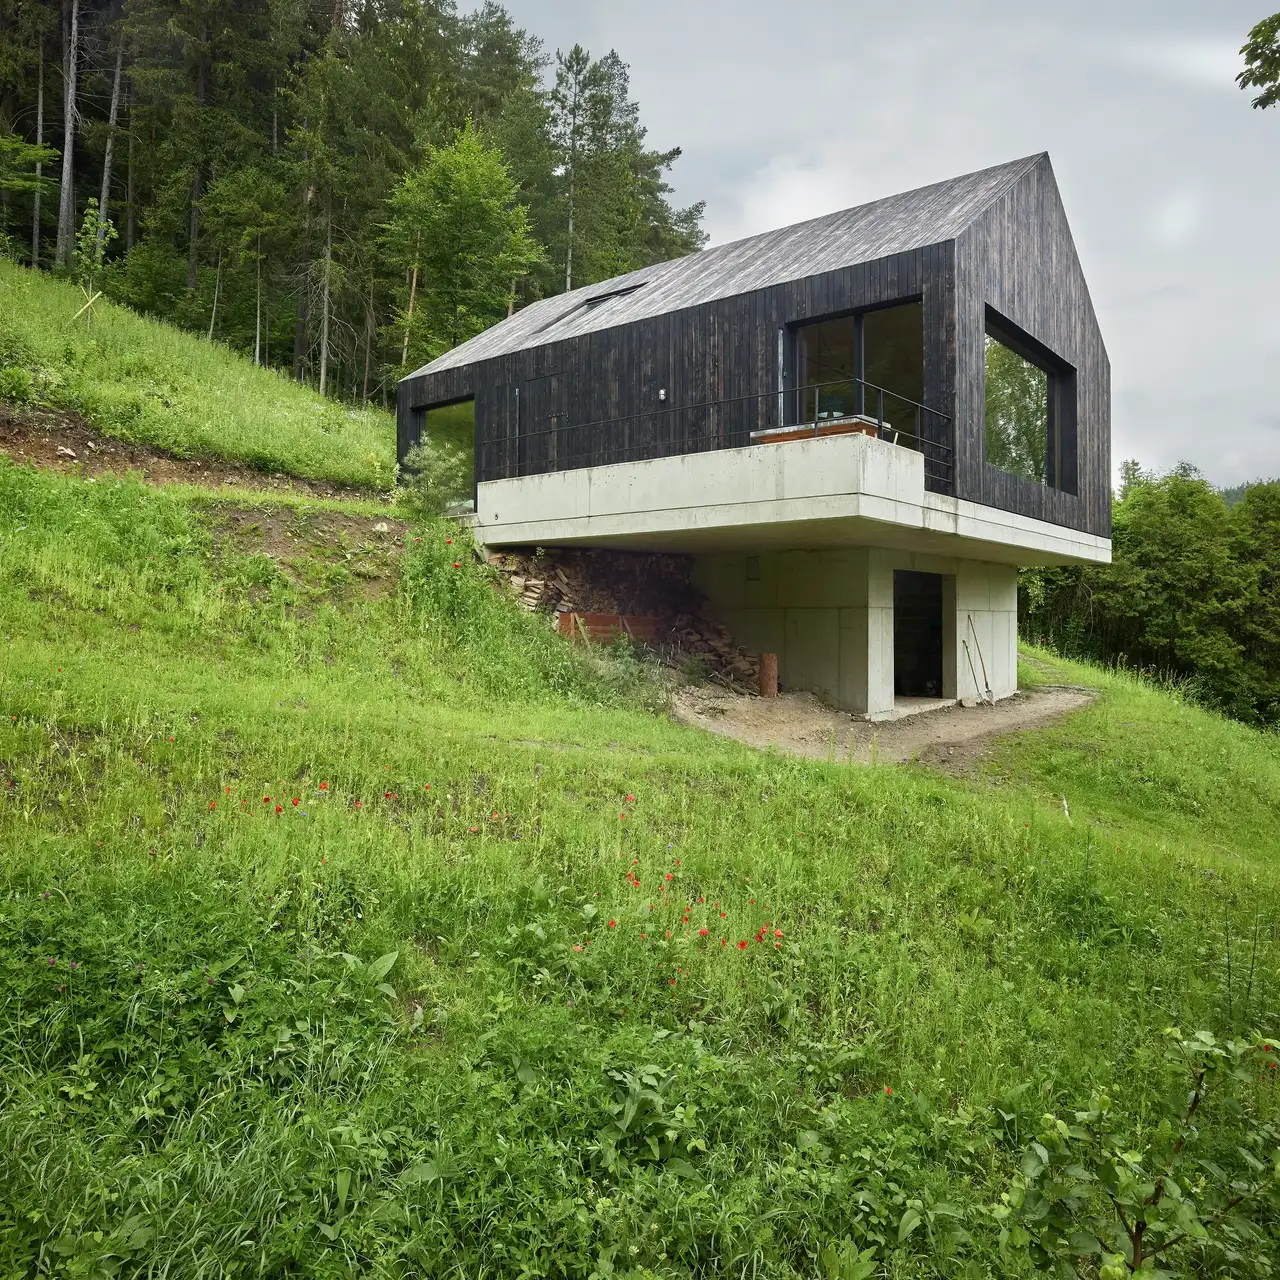 Zeitgenössisches Haus mit auskragendem Design und hölzerner Fassade an einem grünen Hang.